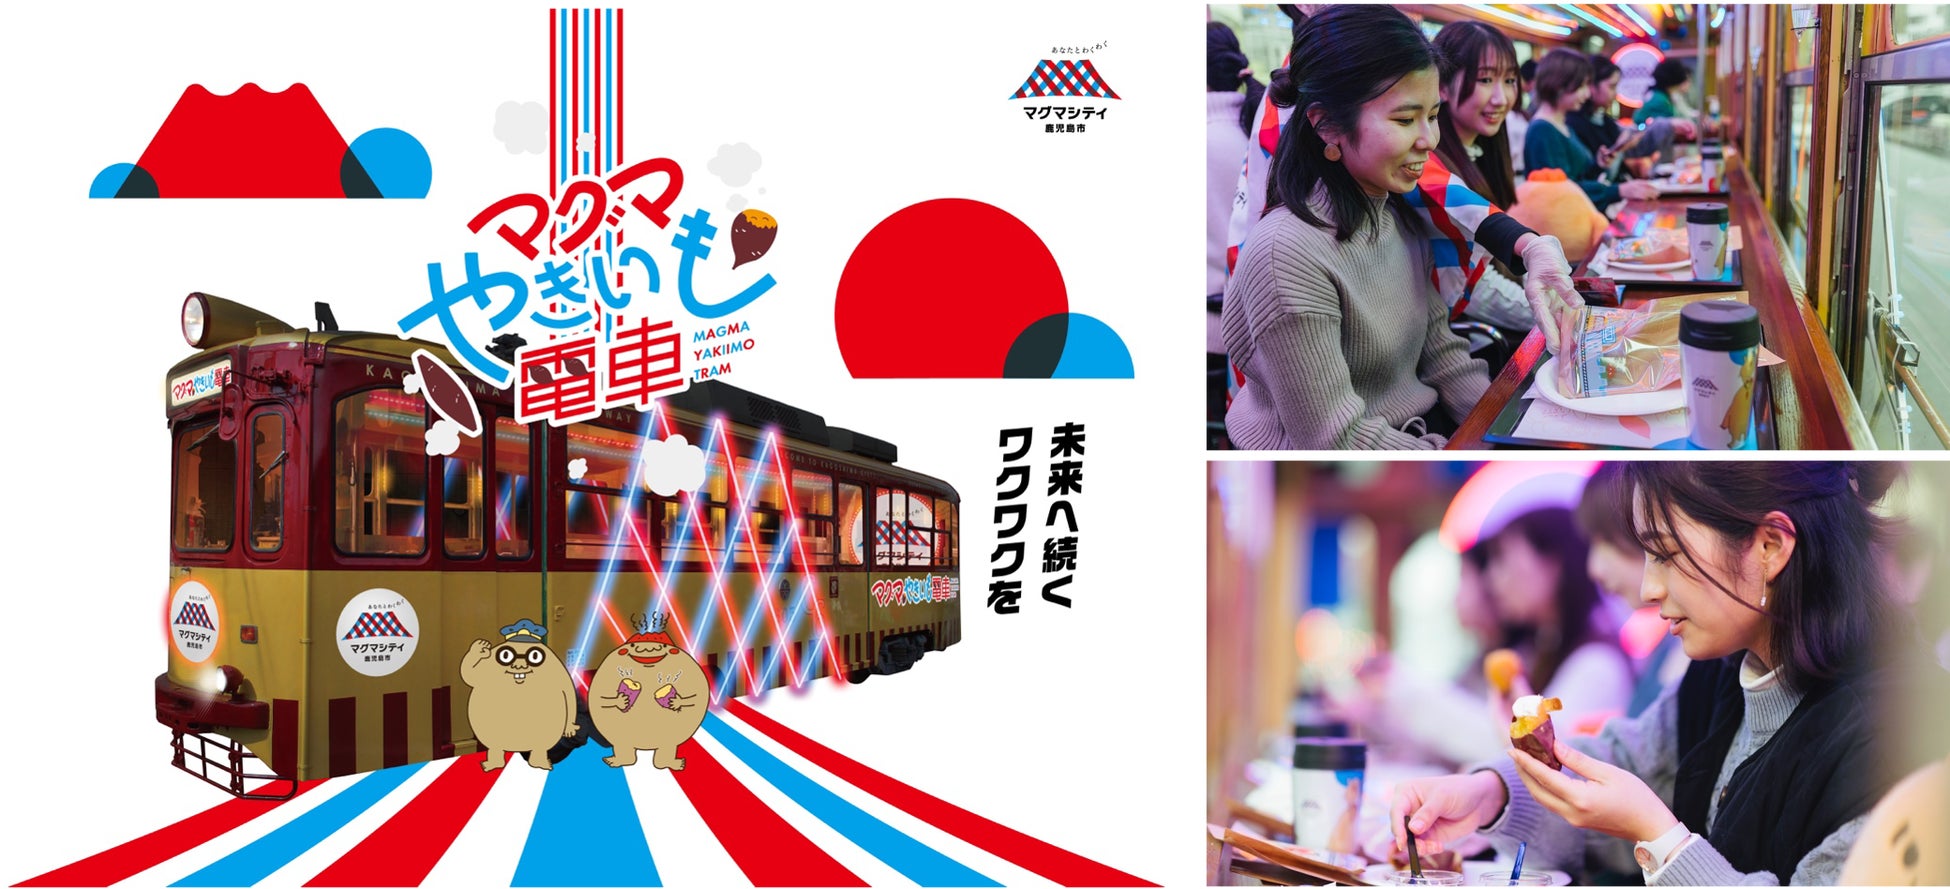 伝統産業製品や京都産⾷材、地域産⽊材等の事業者と、ホテル・旅館などの宿泊事業者をつなぐ「ビジネスマッチング商談会」が、京都伝統産業ミュージアムで開催されます